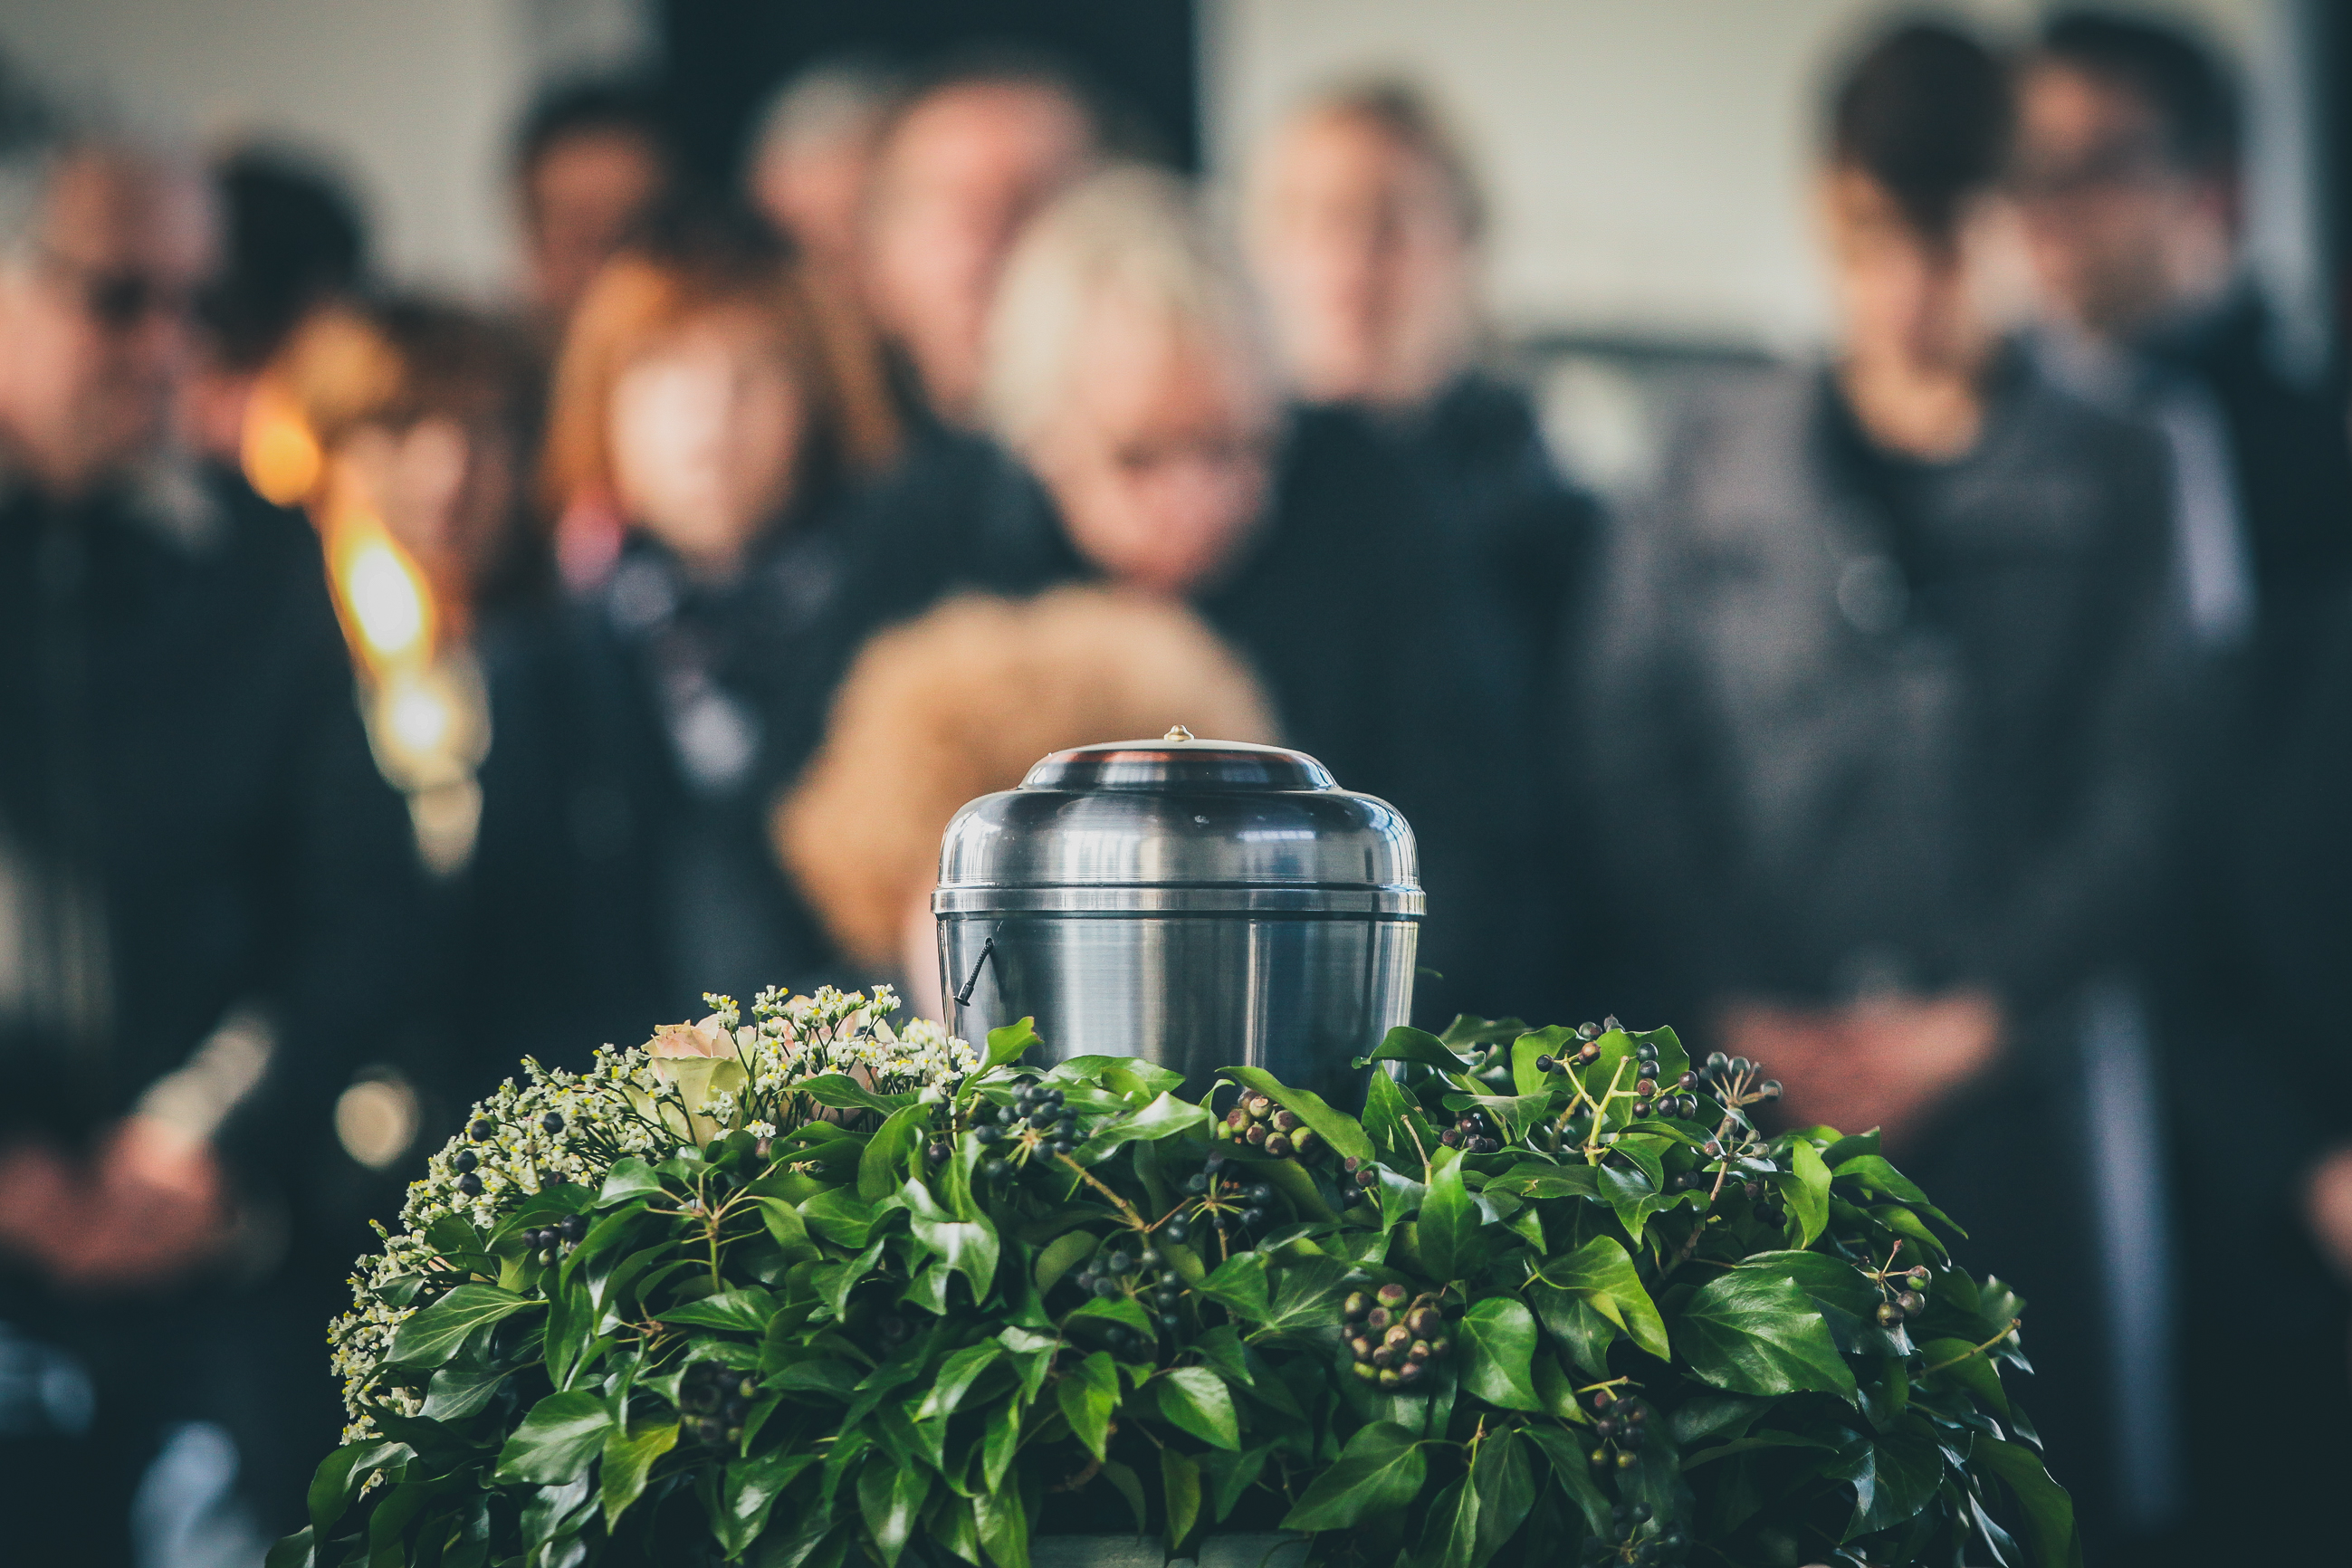 Une urne lors d'une cérémonie funéraire | Source : Shutterstock/Anze Furlan